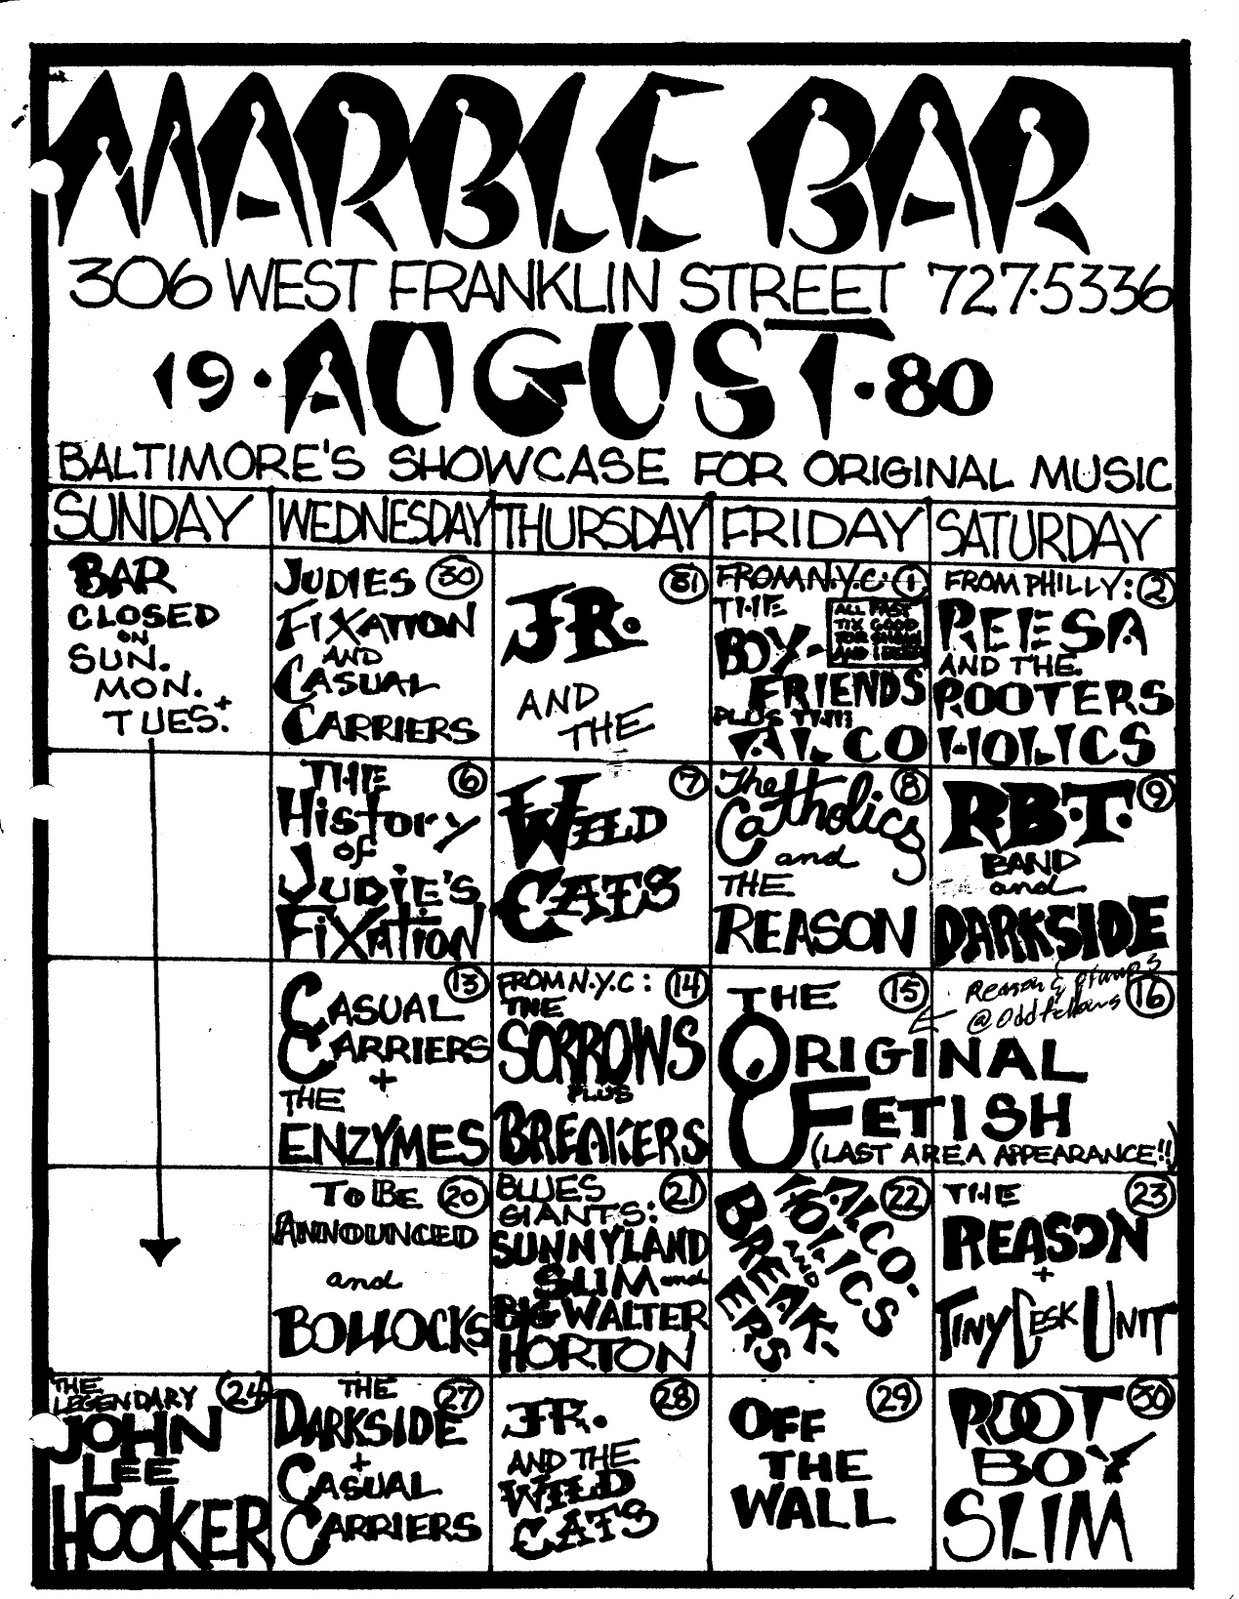 http://www.baltimoreorless.com/wp-content/uploads/2010/08/Marble-Bar-Calendar-August-1980.jpg